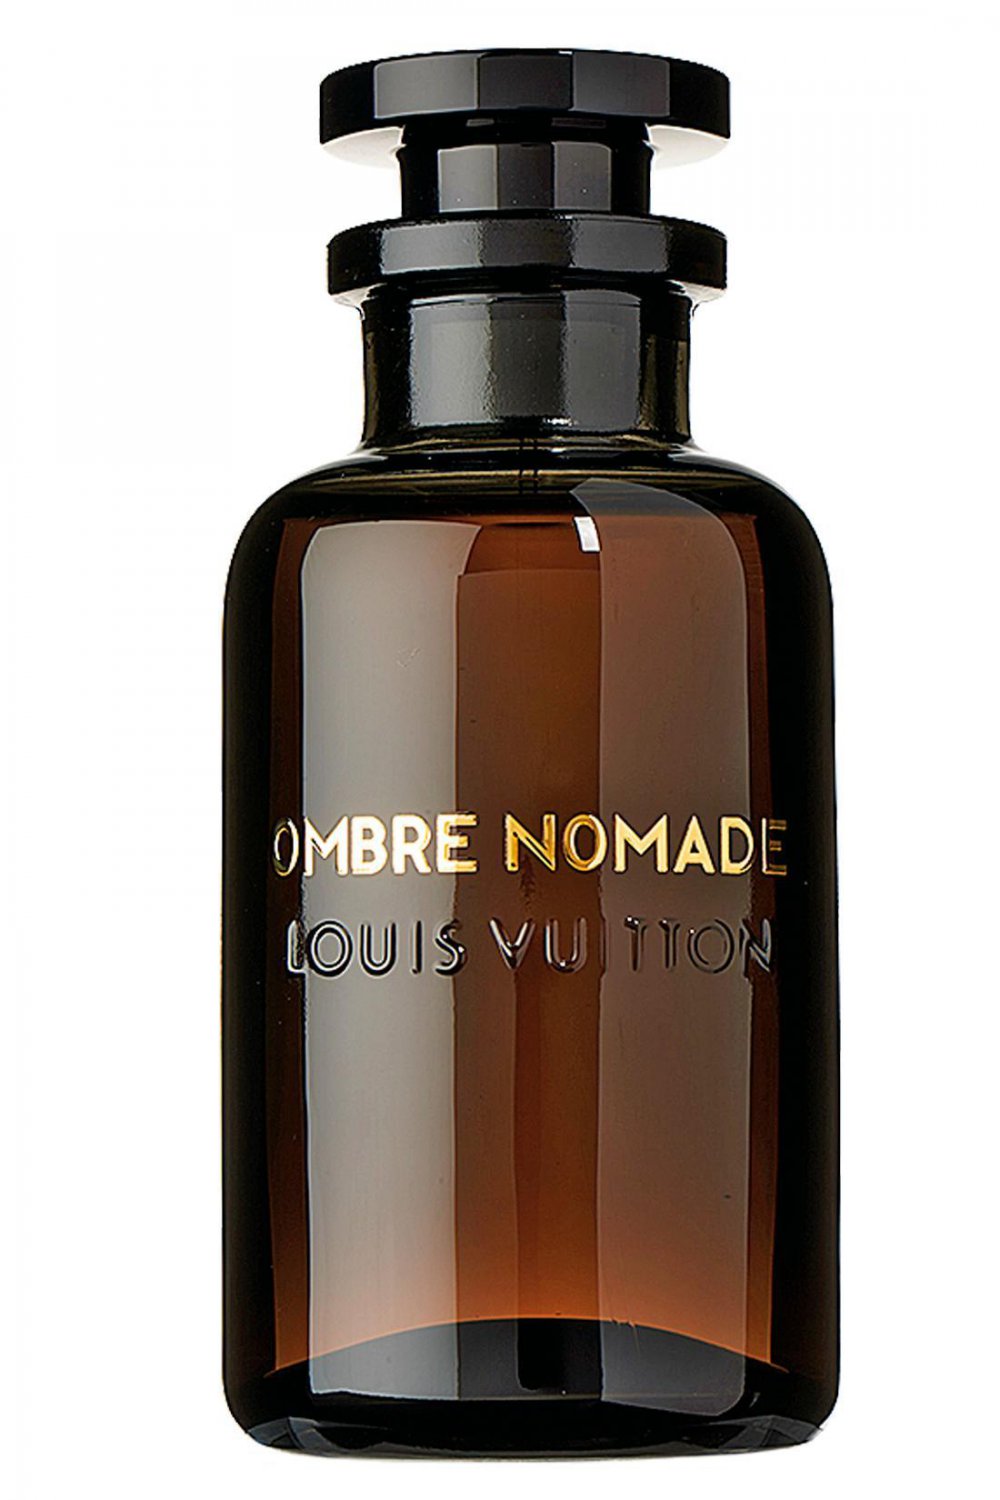 Louis Vuitton Ombre Nomade Perfume, Eau de Parfum 3.4 oz/100 ml Spray.